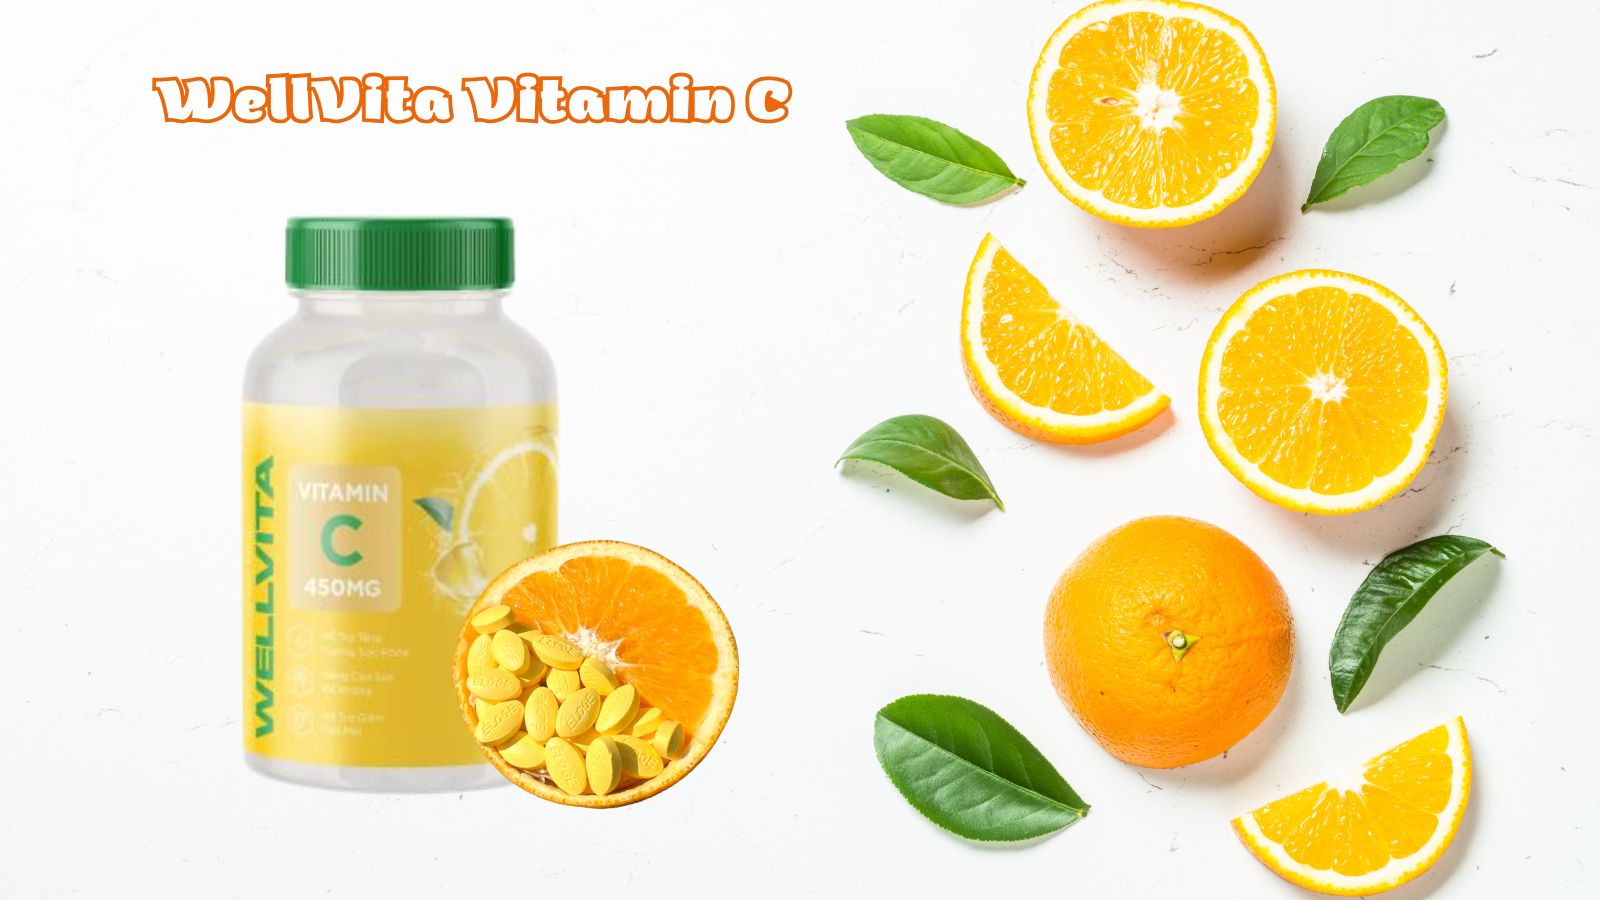 WellVita Vitamin C cung cấp vitamin C cần thiết cho cơ thể